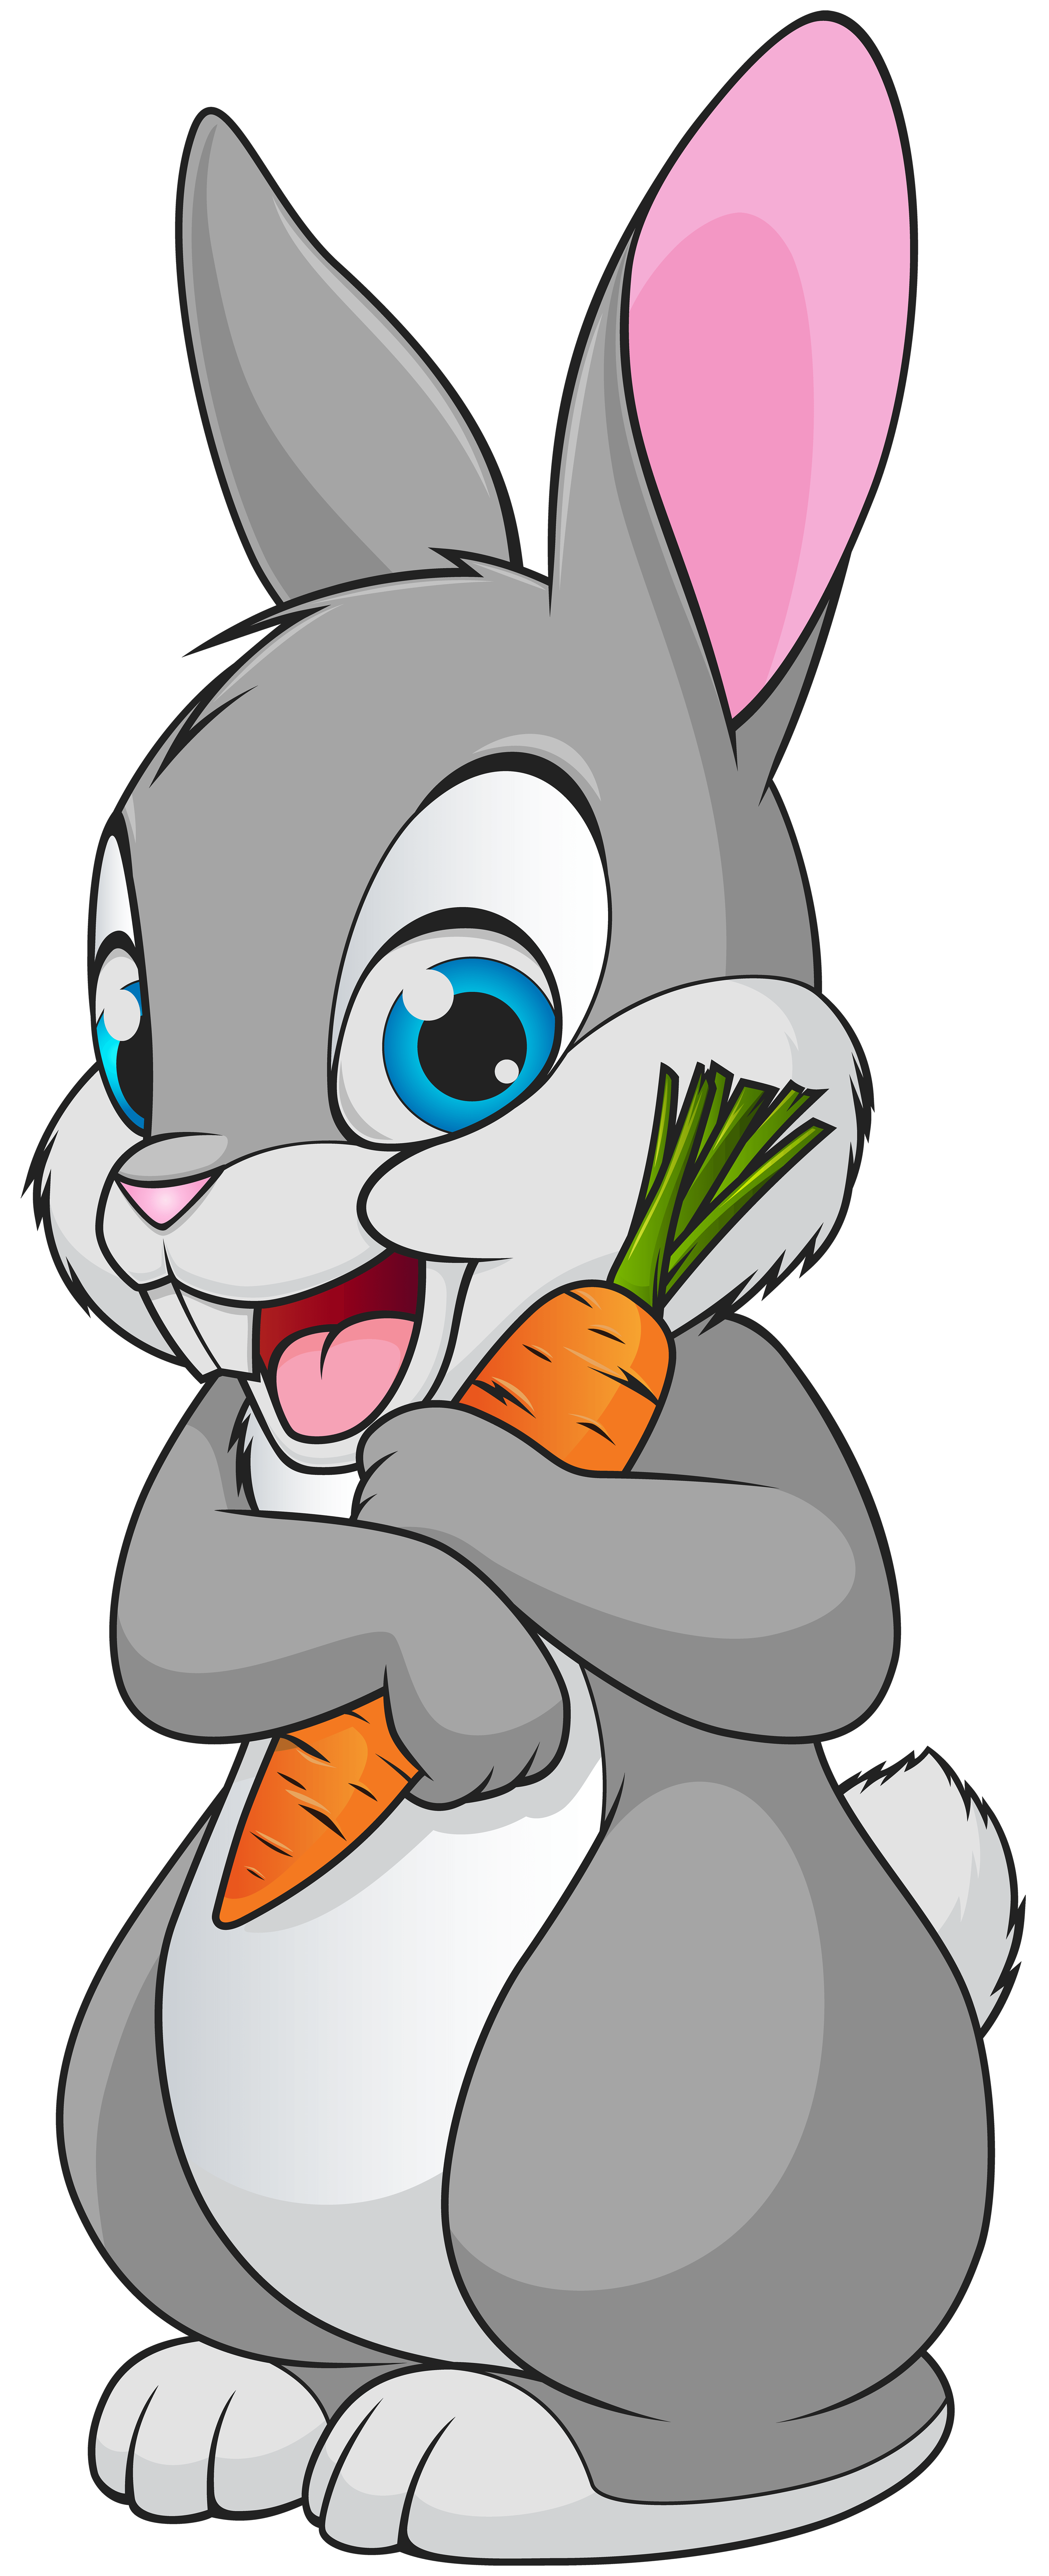  Cute  Cartoon  Bunny  Wallpapers Top Free Cute  Cartoon  